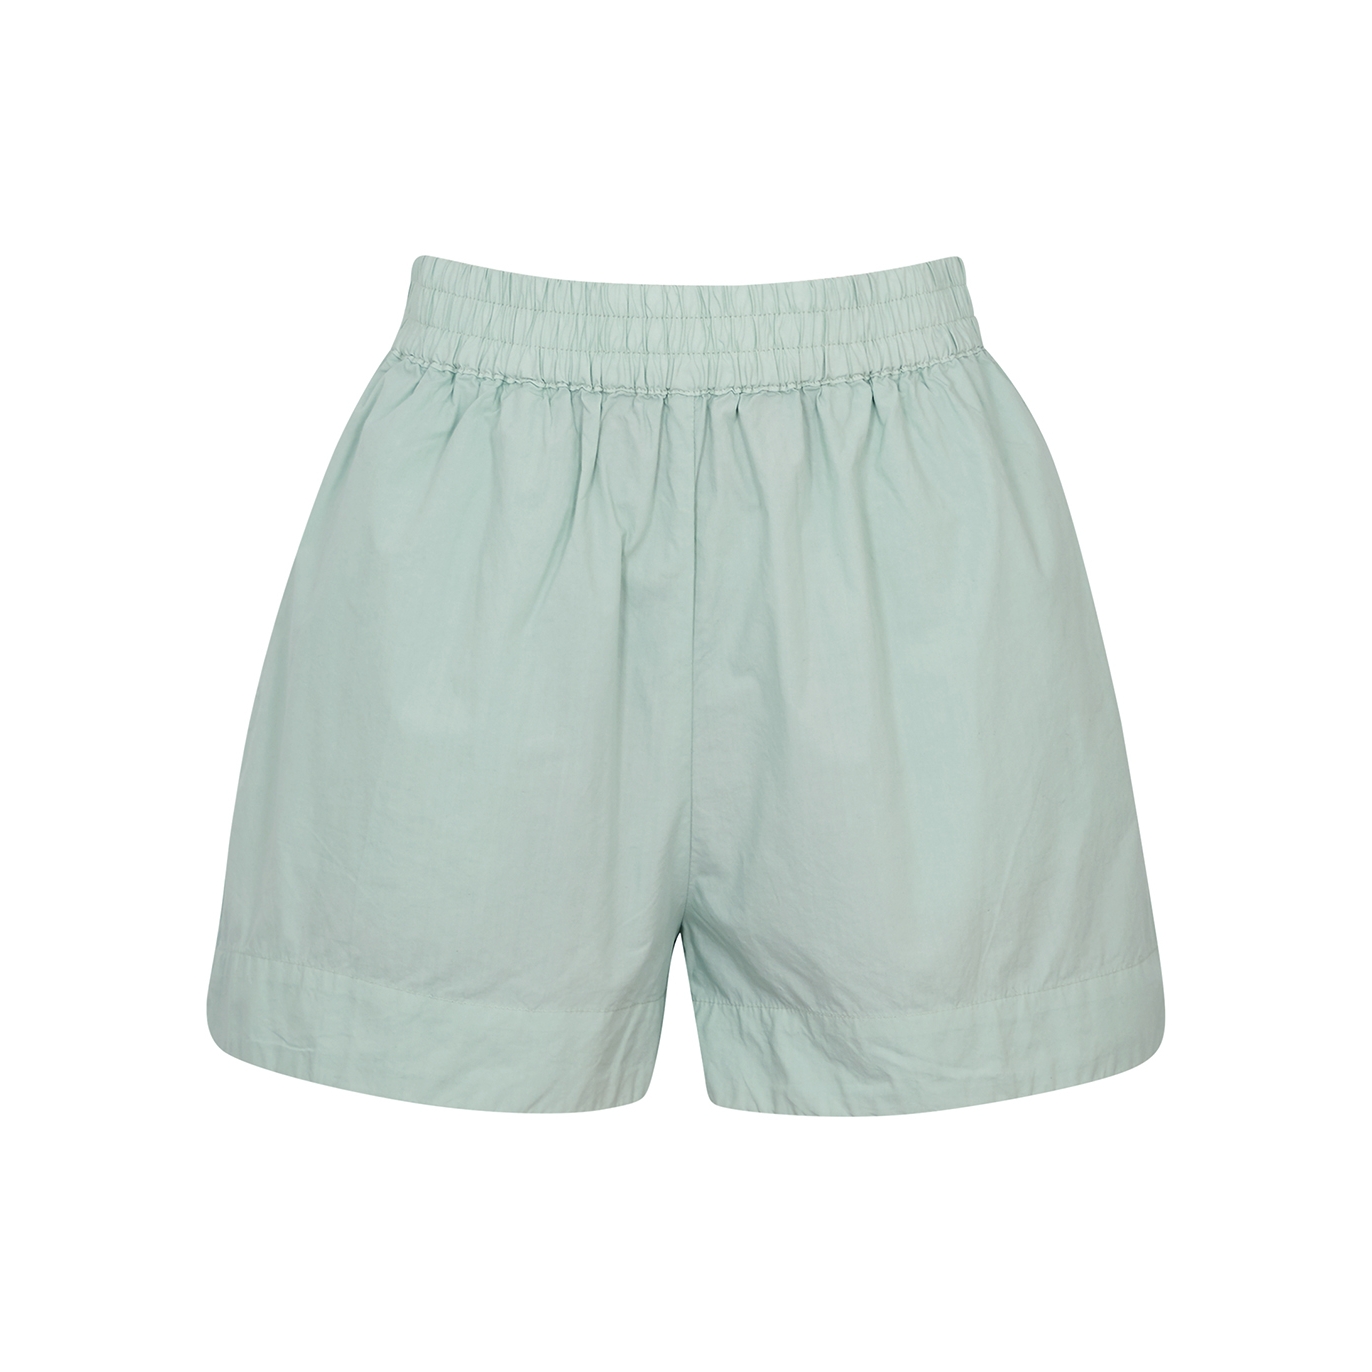 Lmnd Lemonade Chiara Cotton-poplin Shorts, Shorts, Sage